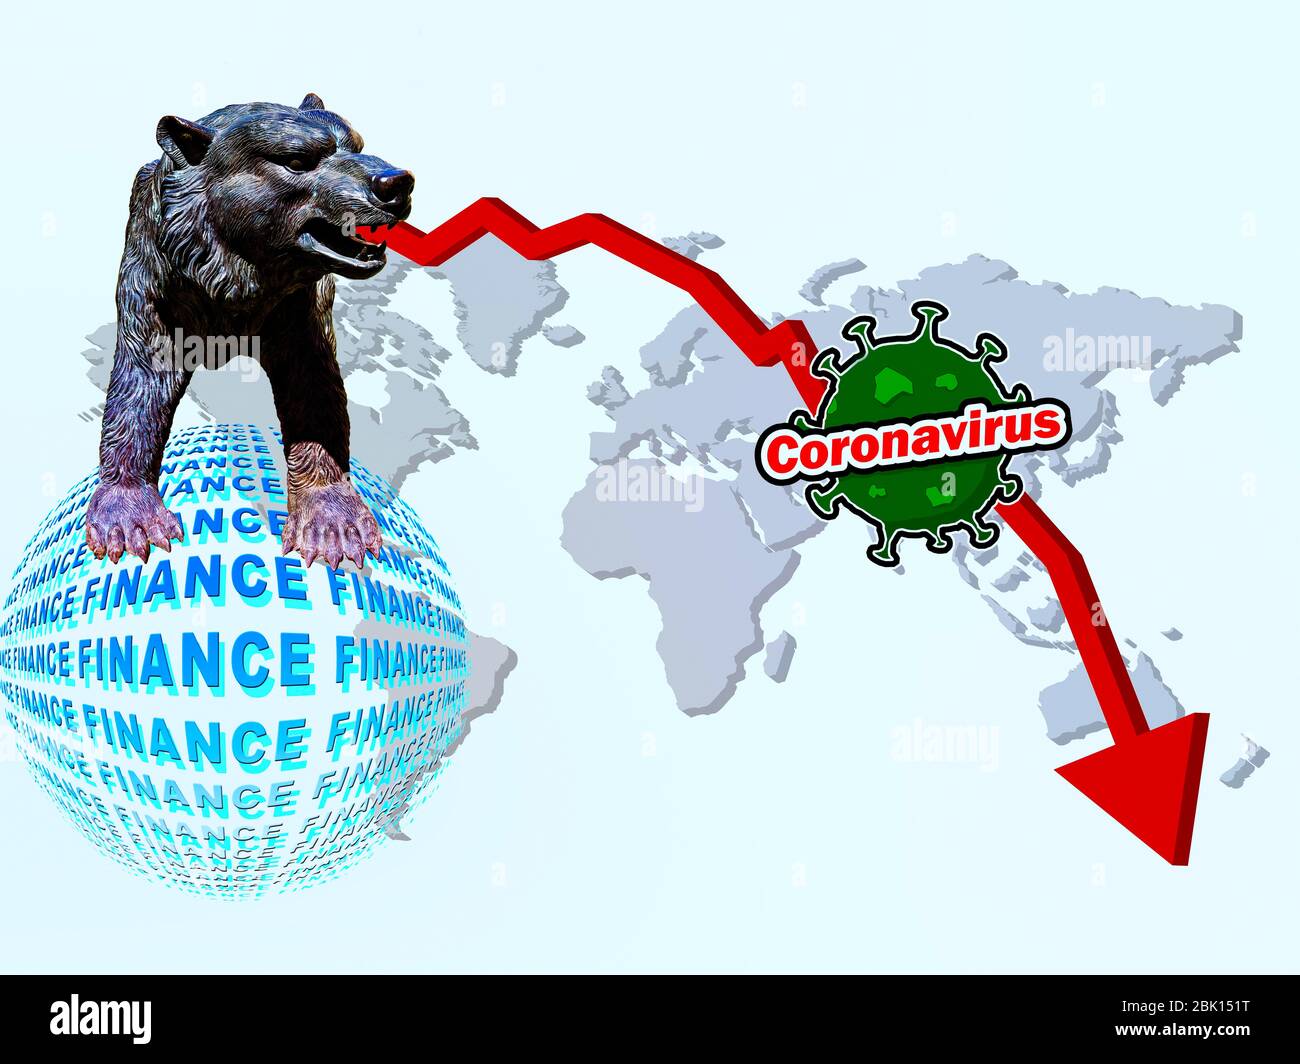 Composizione digitale, calo dei prezzi delle azioni a causa del coronavirus, Convid-19, recessione, economia mondiale, mercato finanziario, azioni, economia, globalizzazione Foto Stock